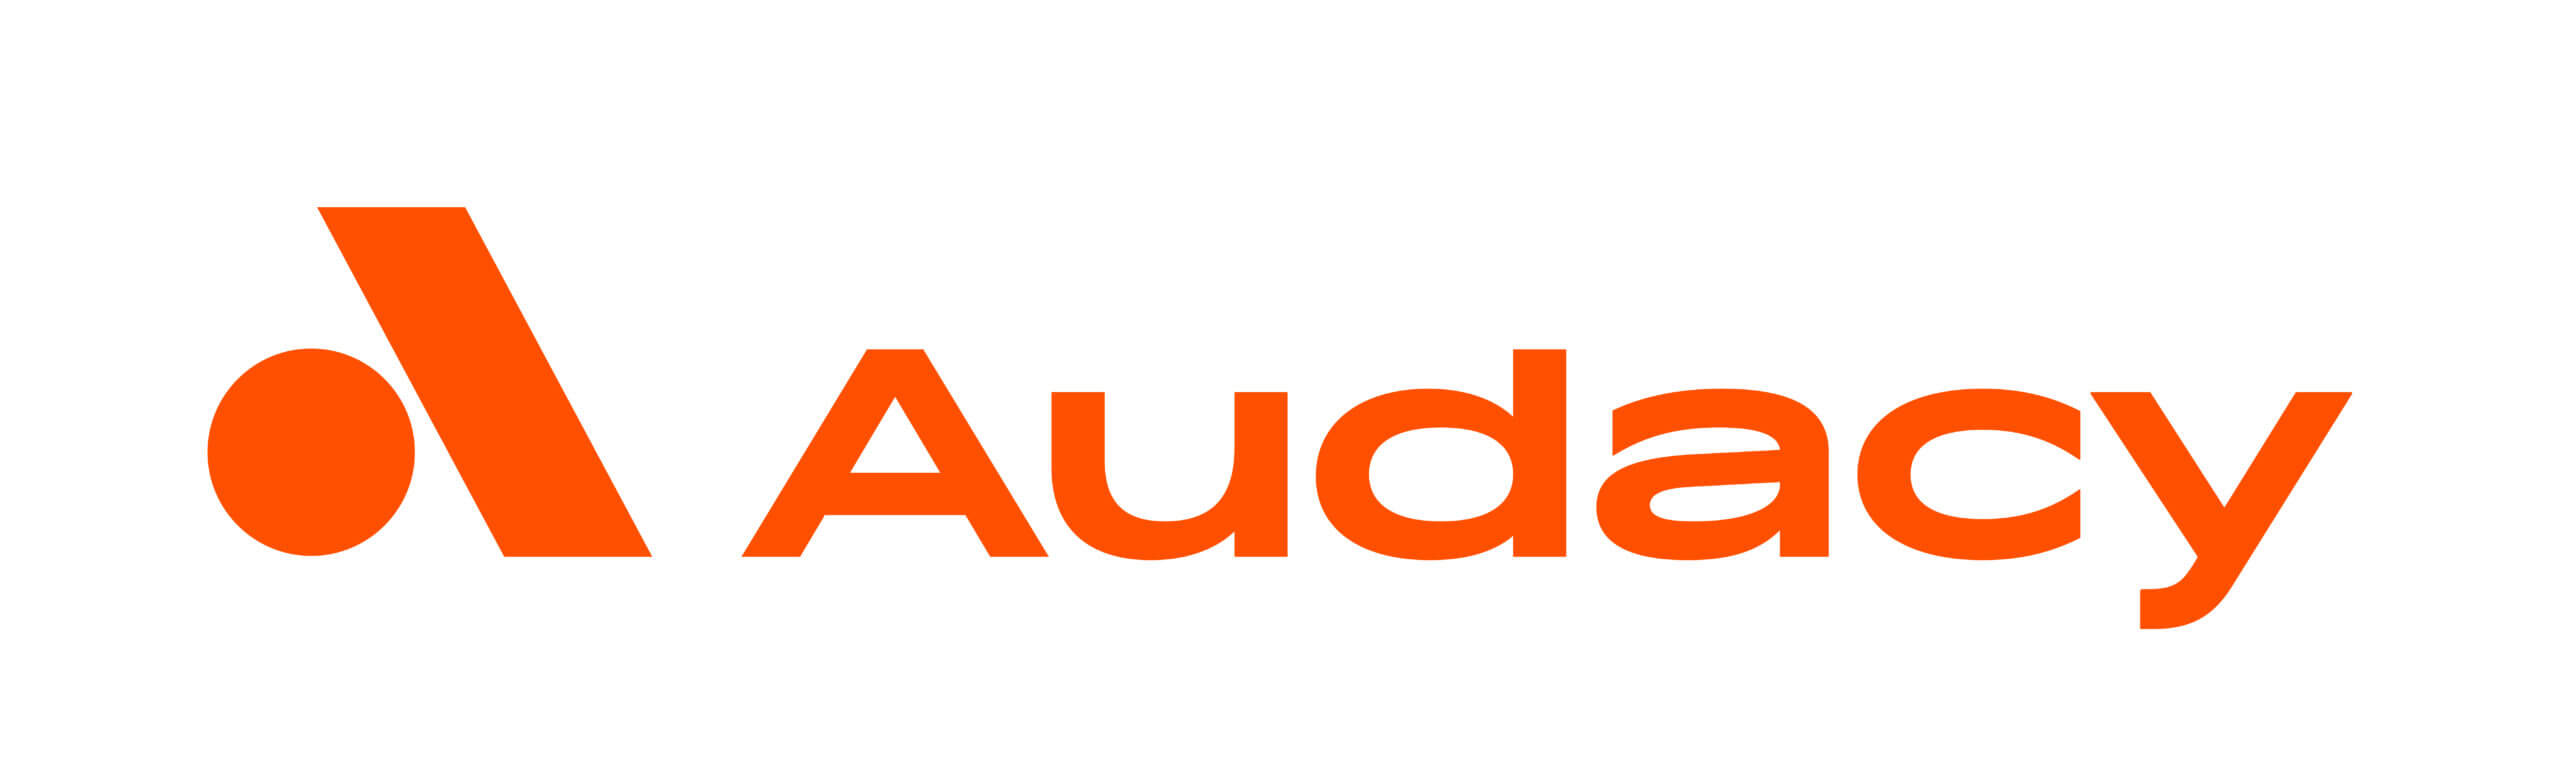 audacy logo horiz color